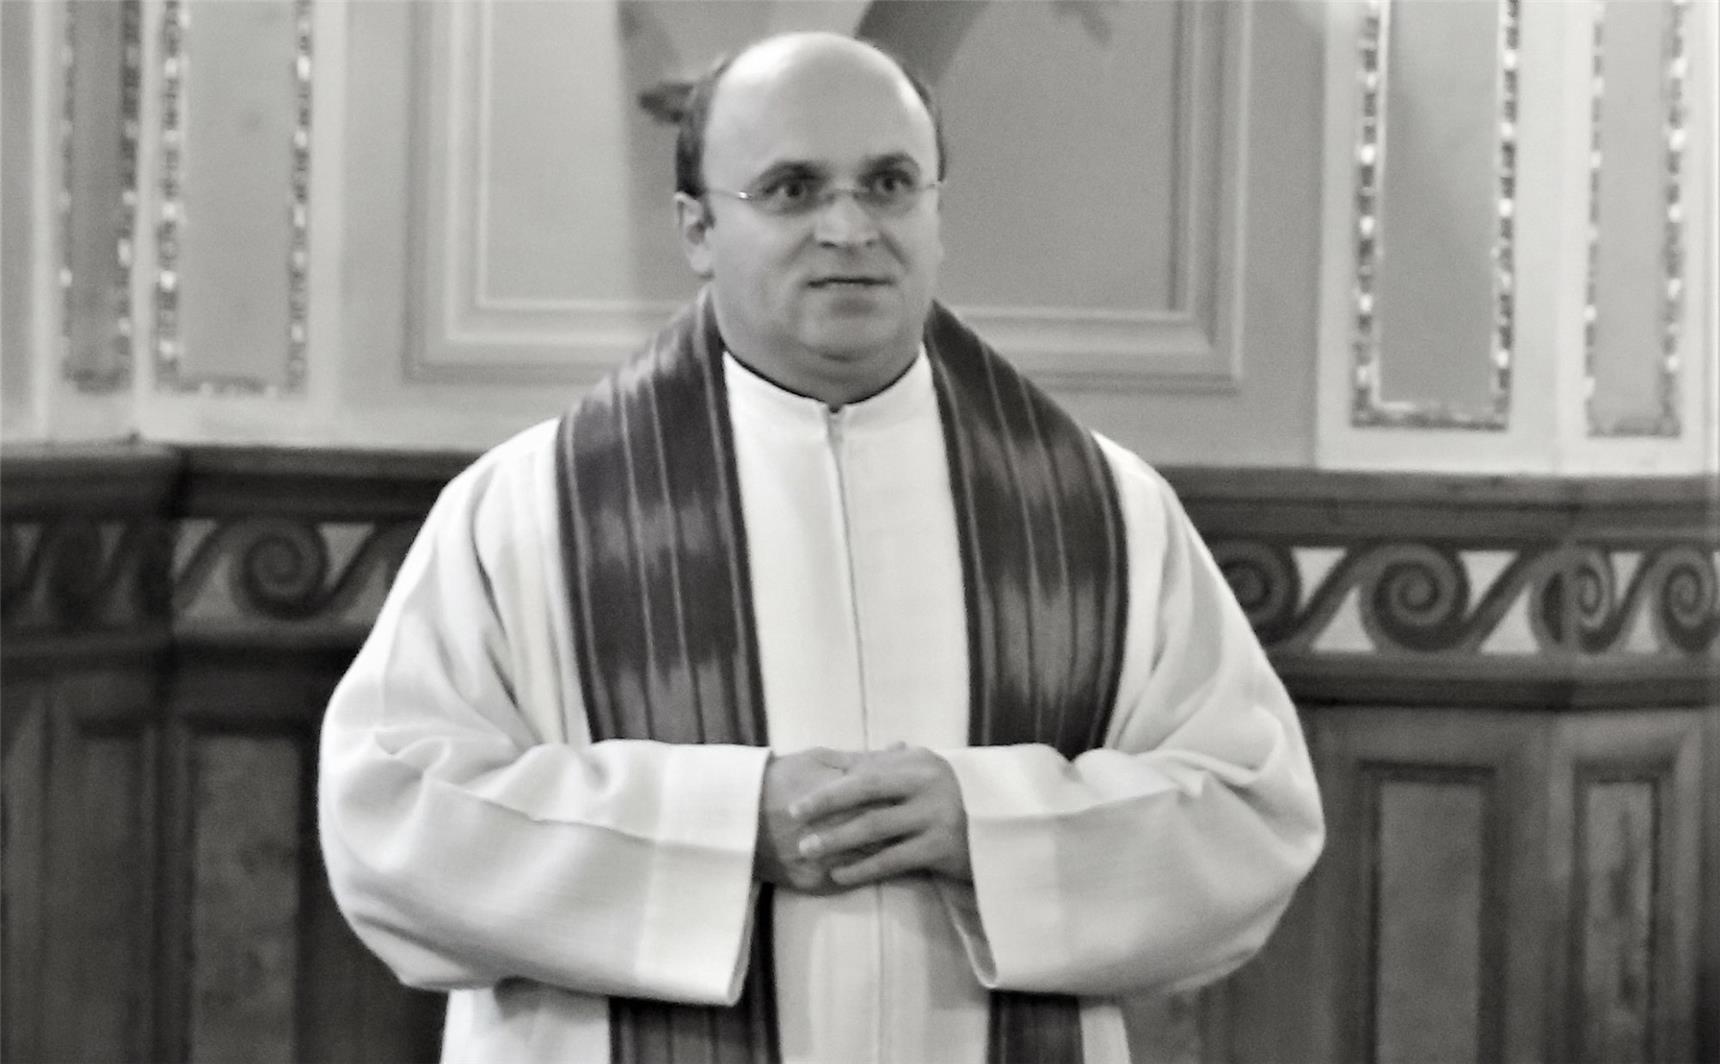 Generalvikar Dr. Ferenc Hankovszky im Priestergewand in einer Kirche